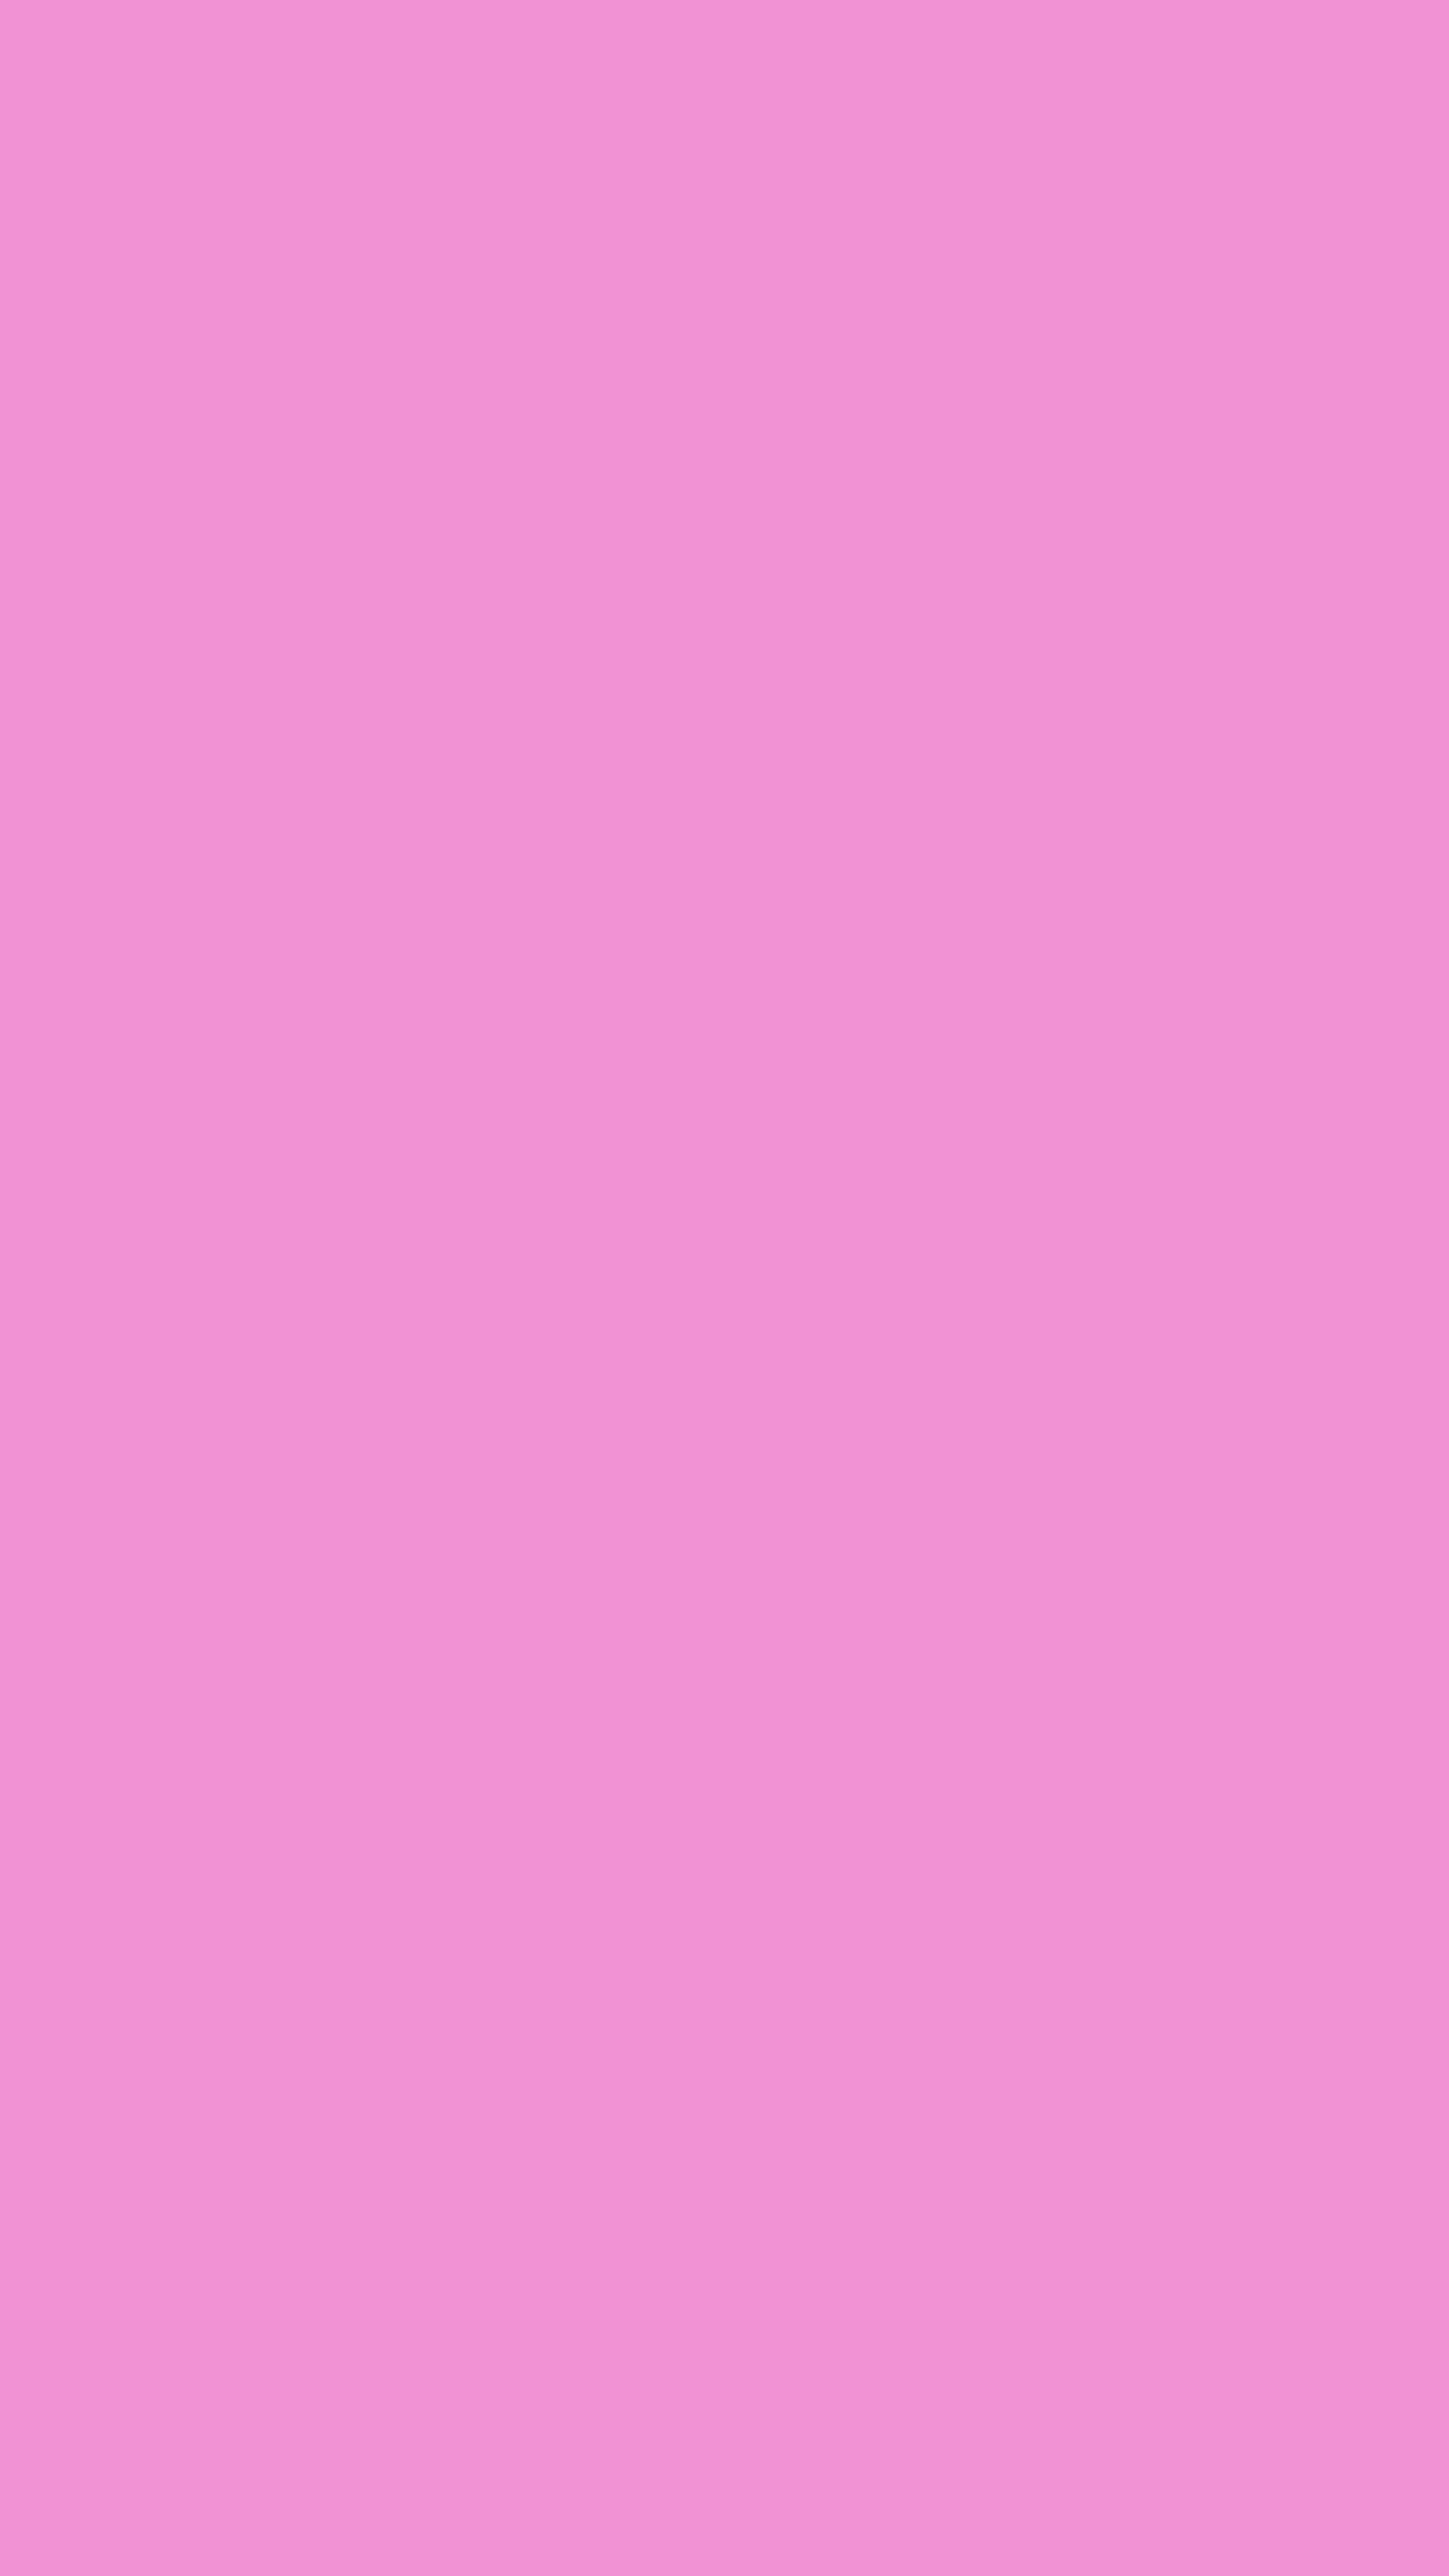 Pretty in Pink Шпалери[87fc89a864ff49ce8e01]